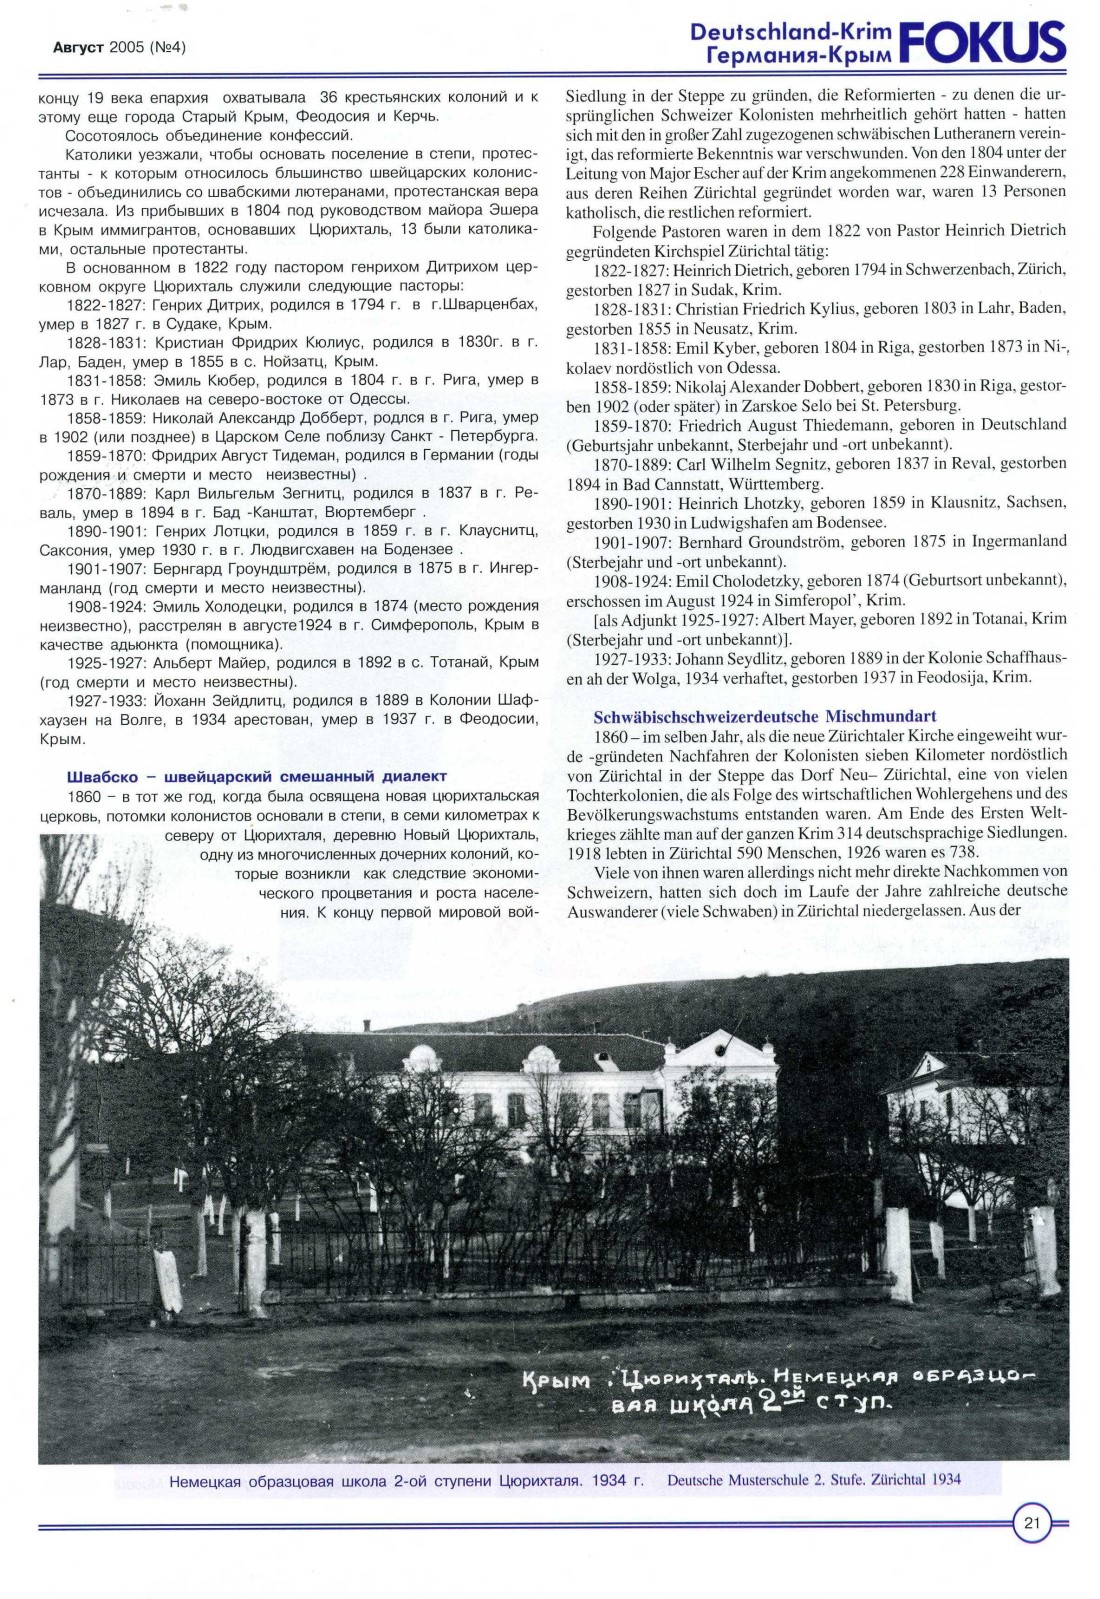 Kolonie Zrichtal: Vor 200 Jahren von Schweizer Auswanderern gegrndet, FOKUS Deutschland-Rim August 2005, Seite 21